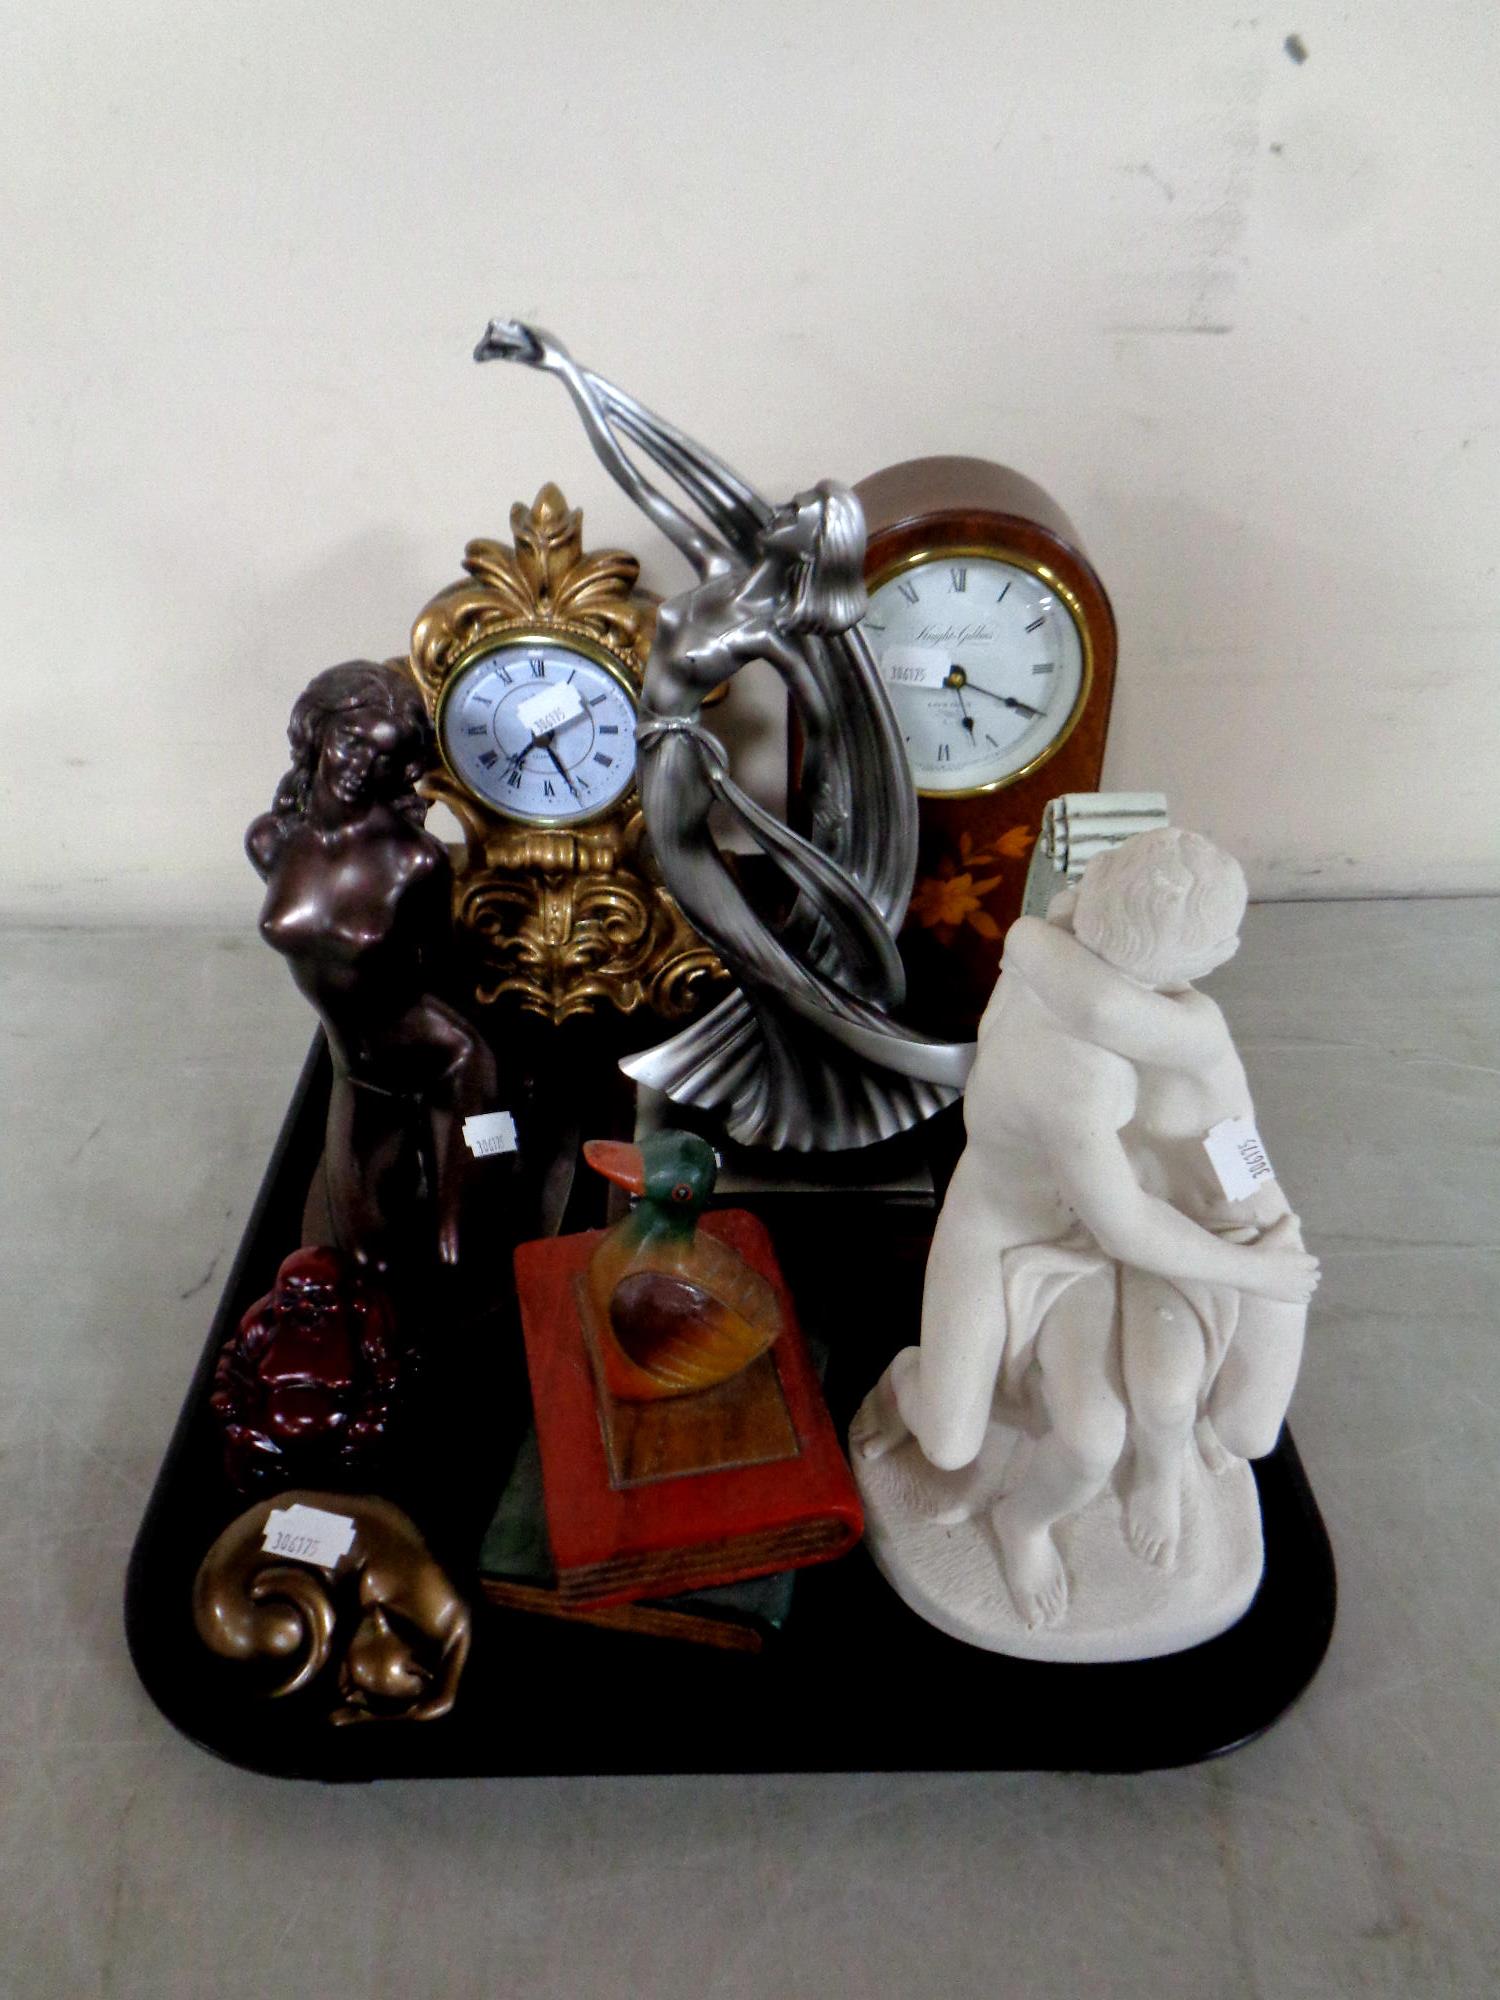 A tray of contemporary ornaments and mantel clocks : Julianna,